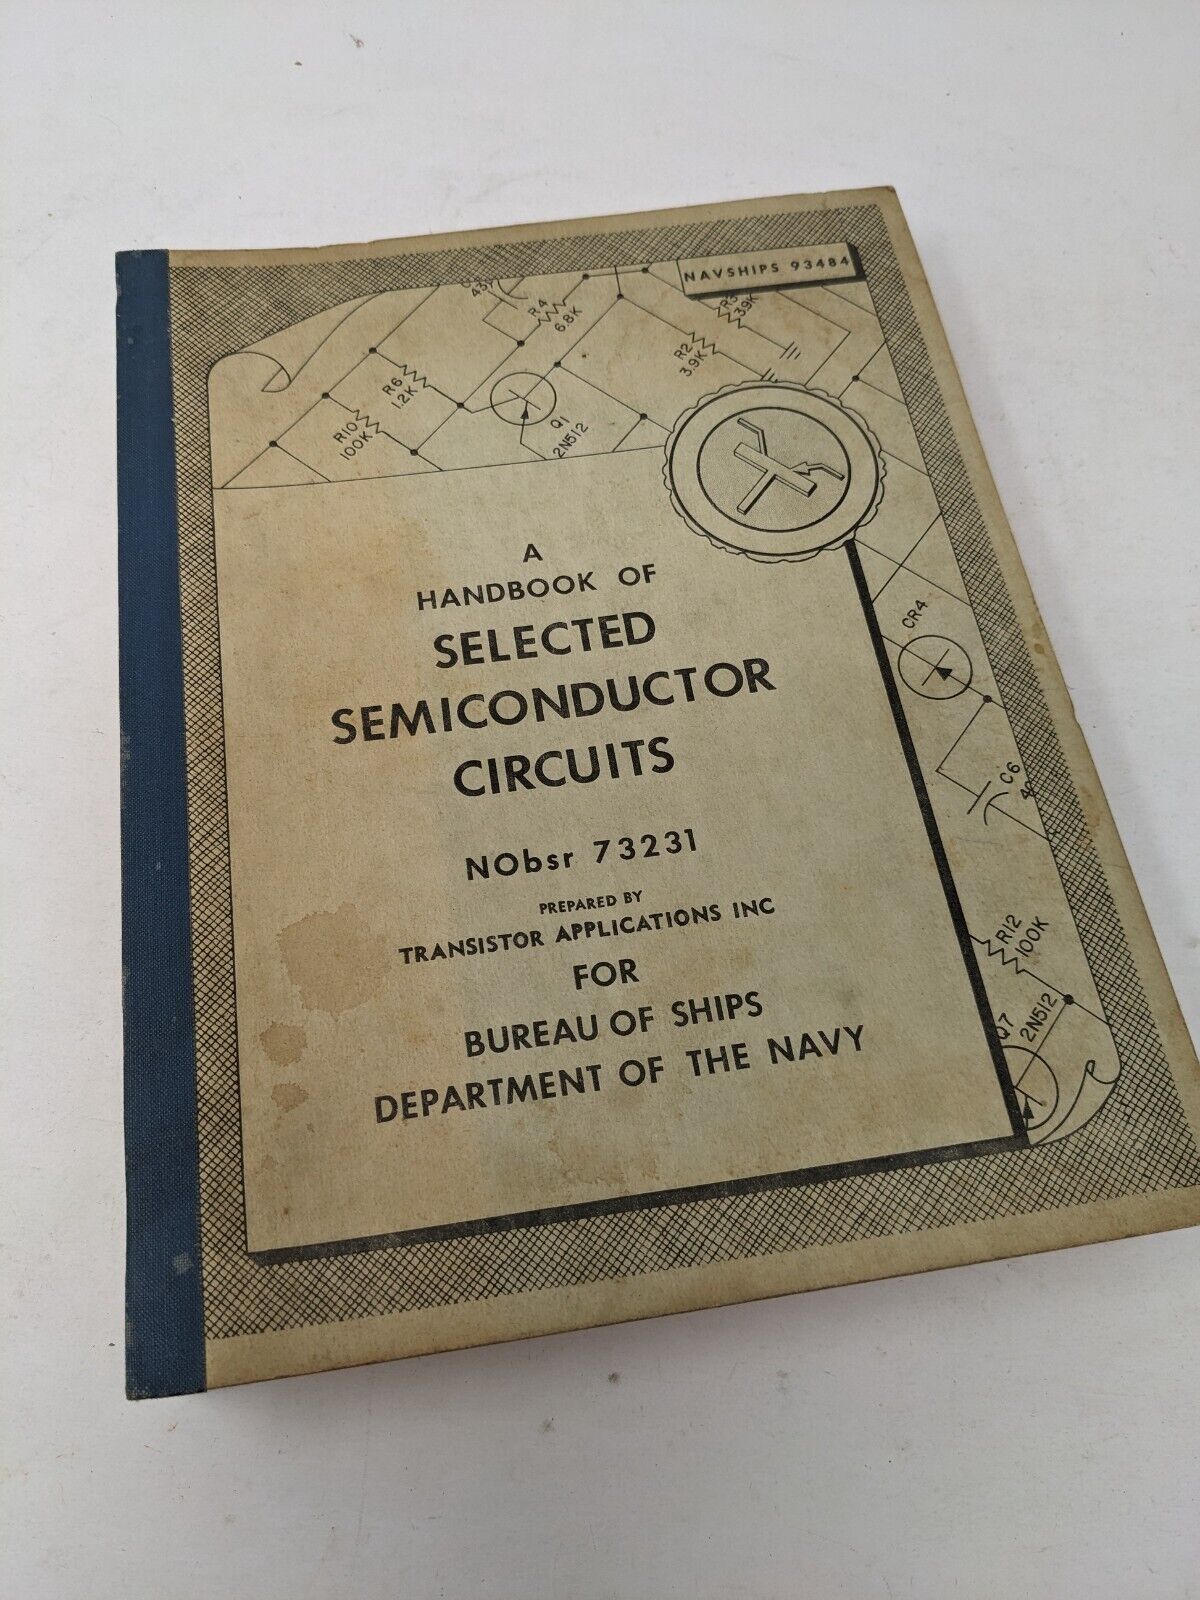 Navy NAVSHIPS 93484 Handbook Selected Semiconductor Circuits 1960s